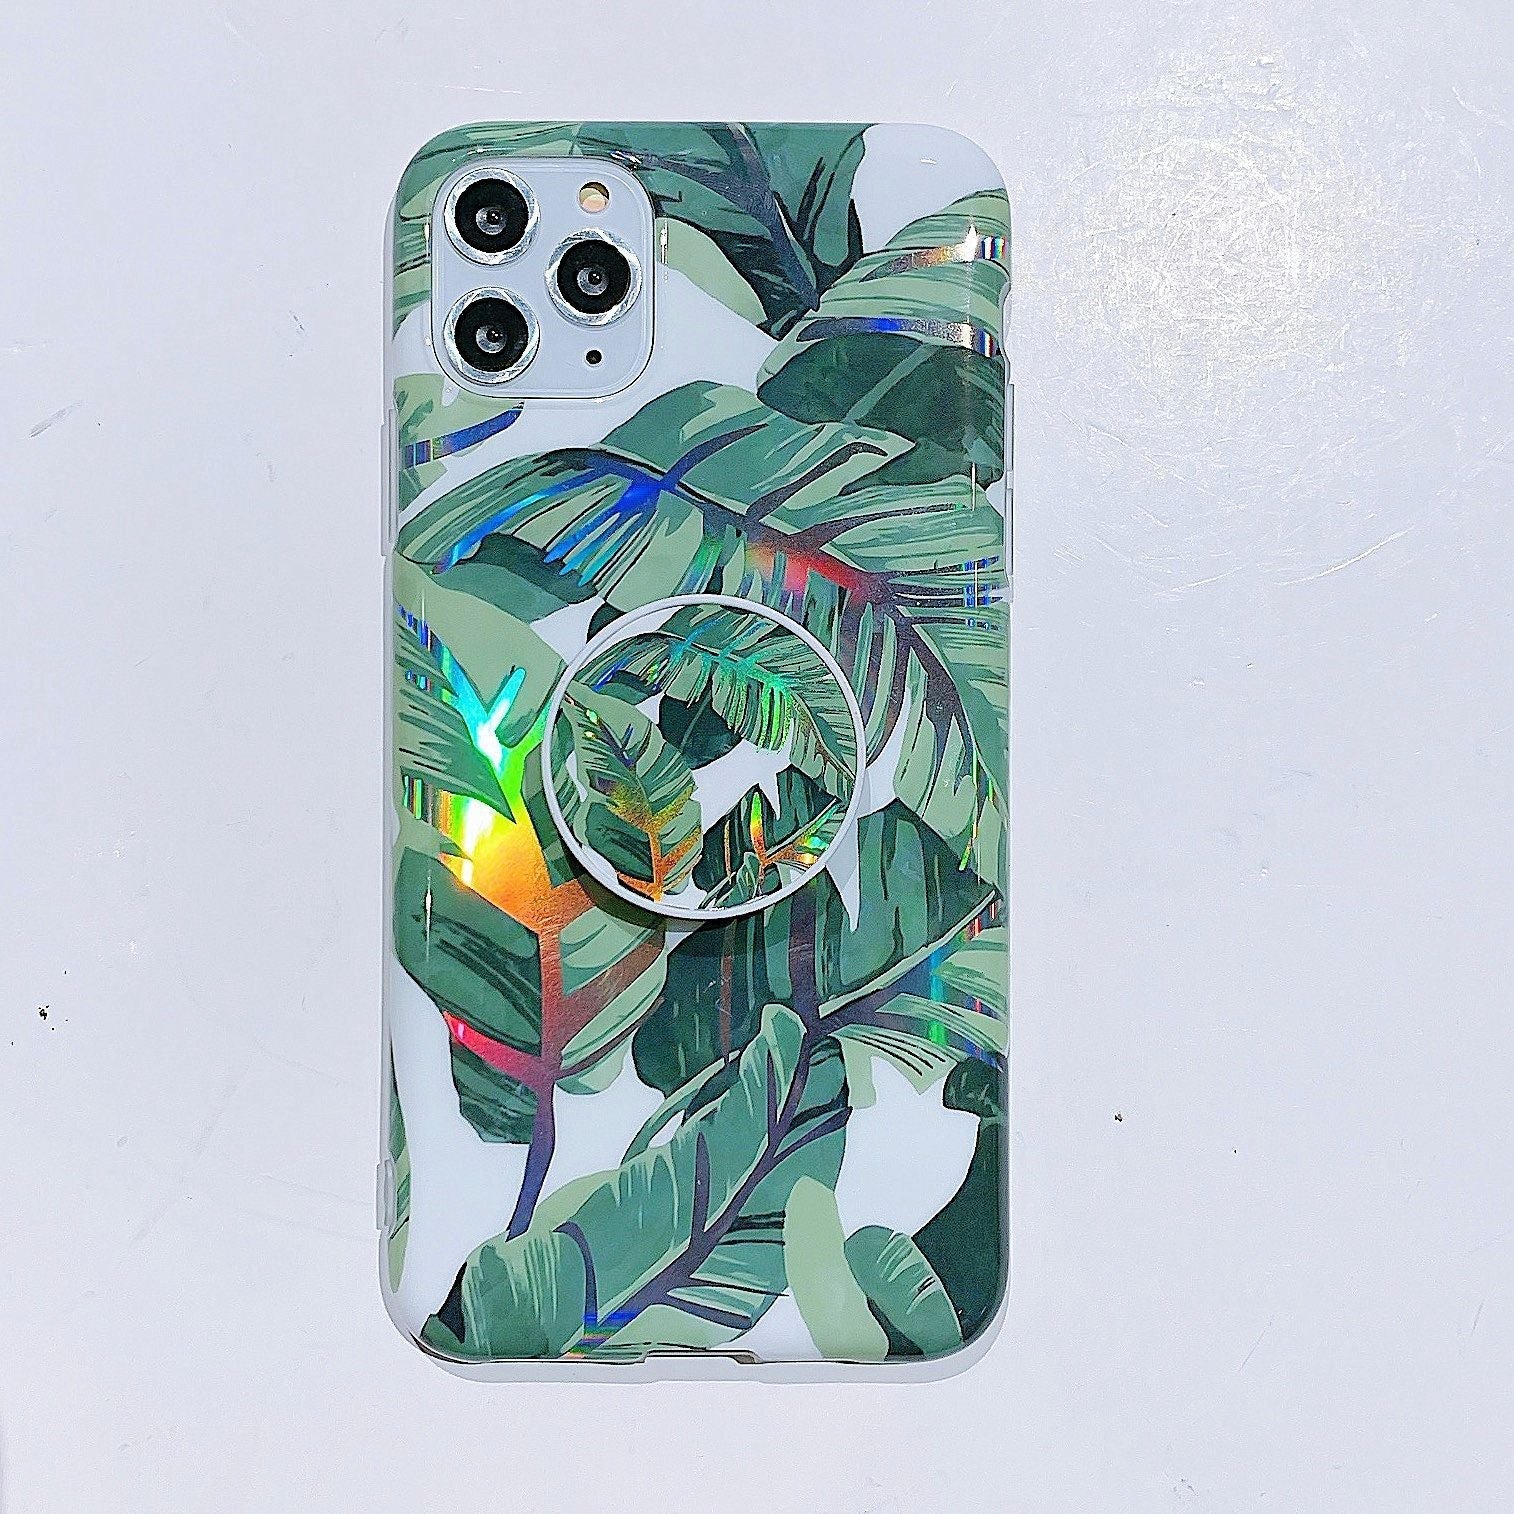 Laser Flower Series Phone Case